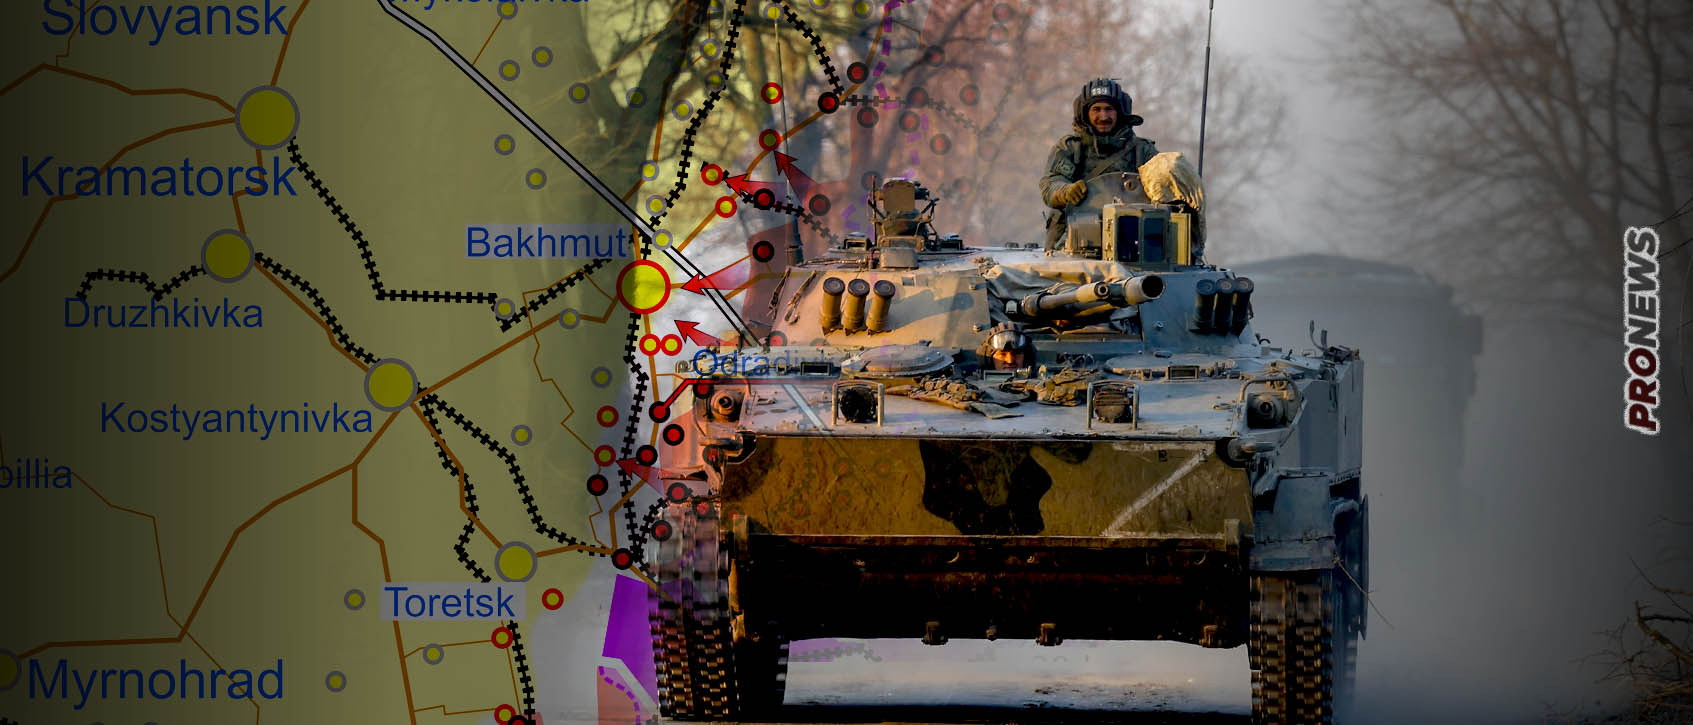 Πολεμικός ανταποκριτής των ρωσικών δυνάμεων: «Το Μπακχμούτ μετράει ημέρες πριν την κατάληψη»